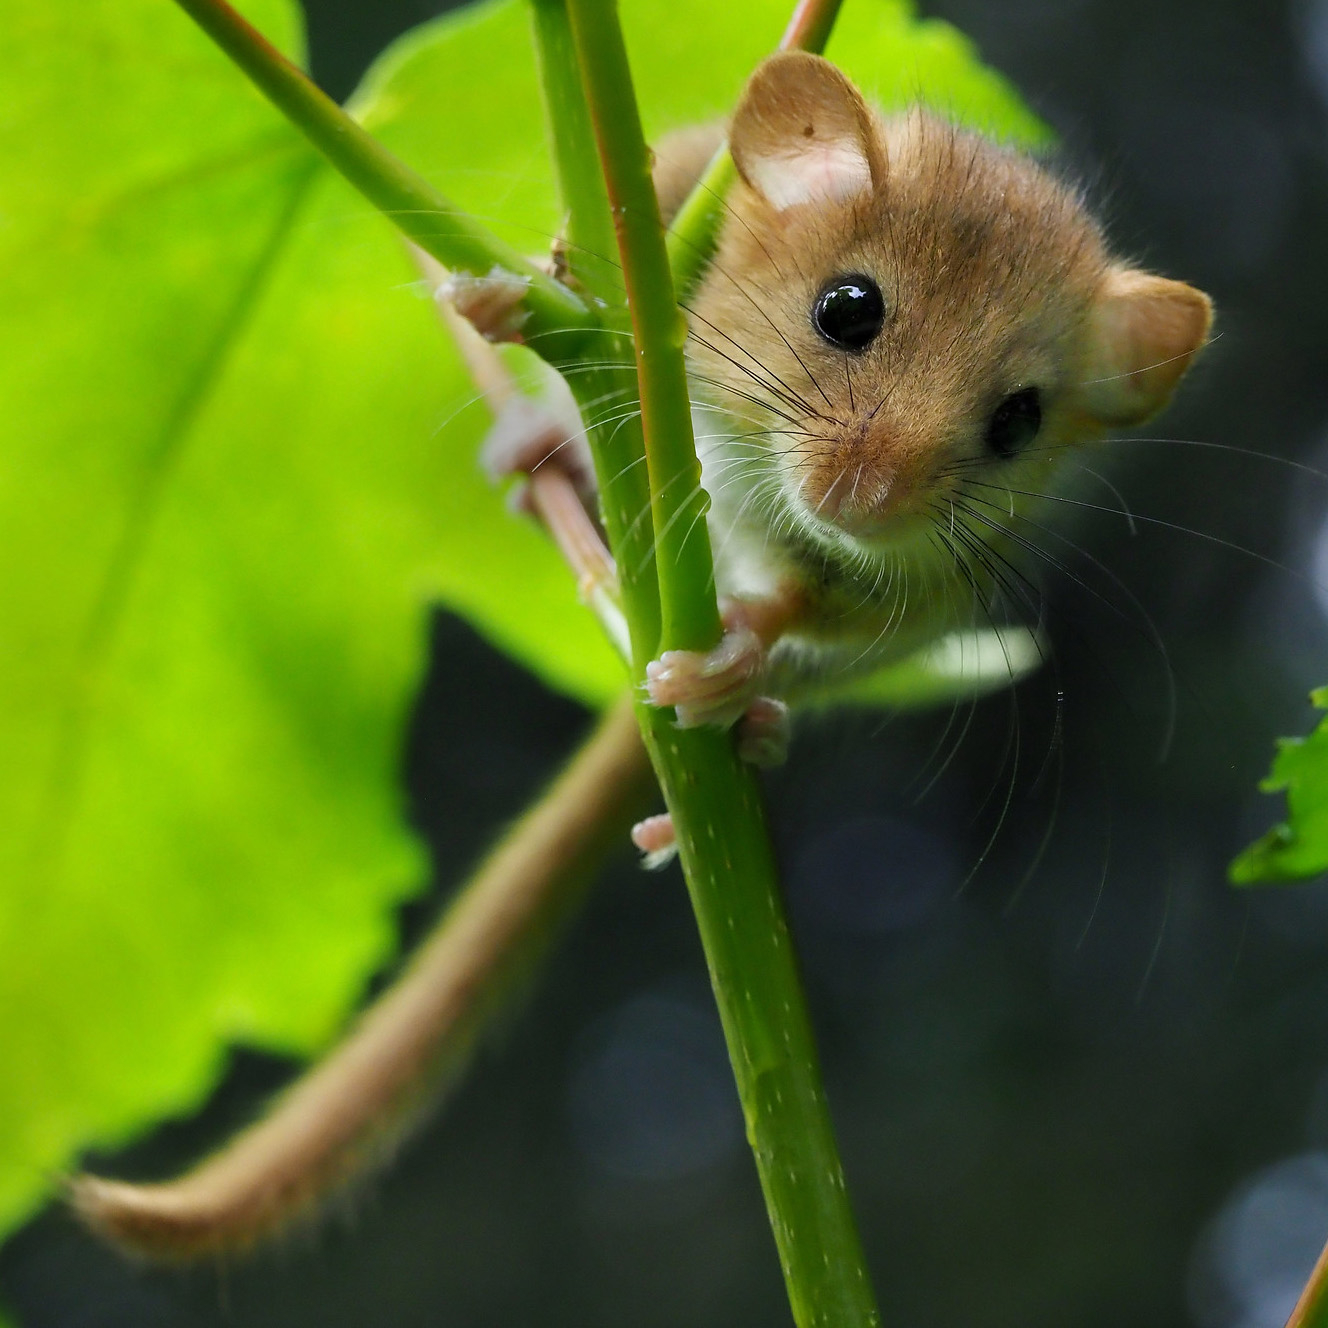 A dormouse climbing a plant stem